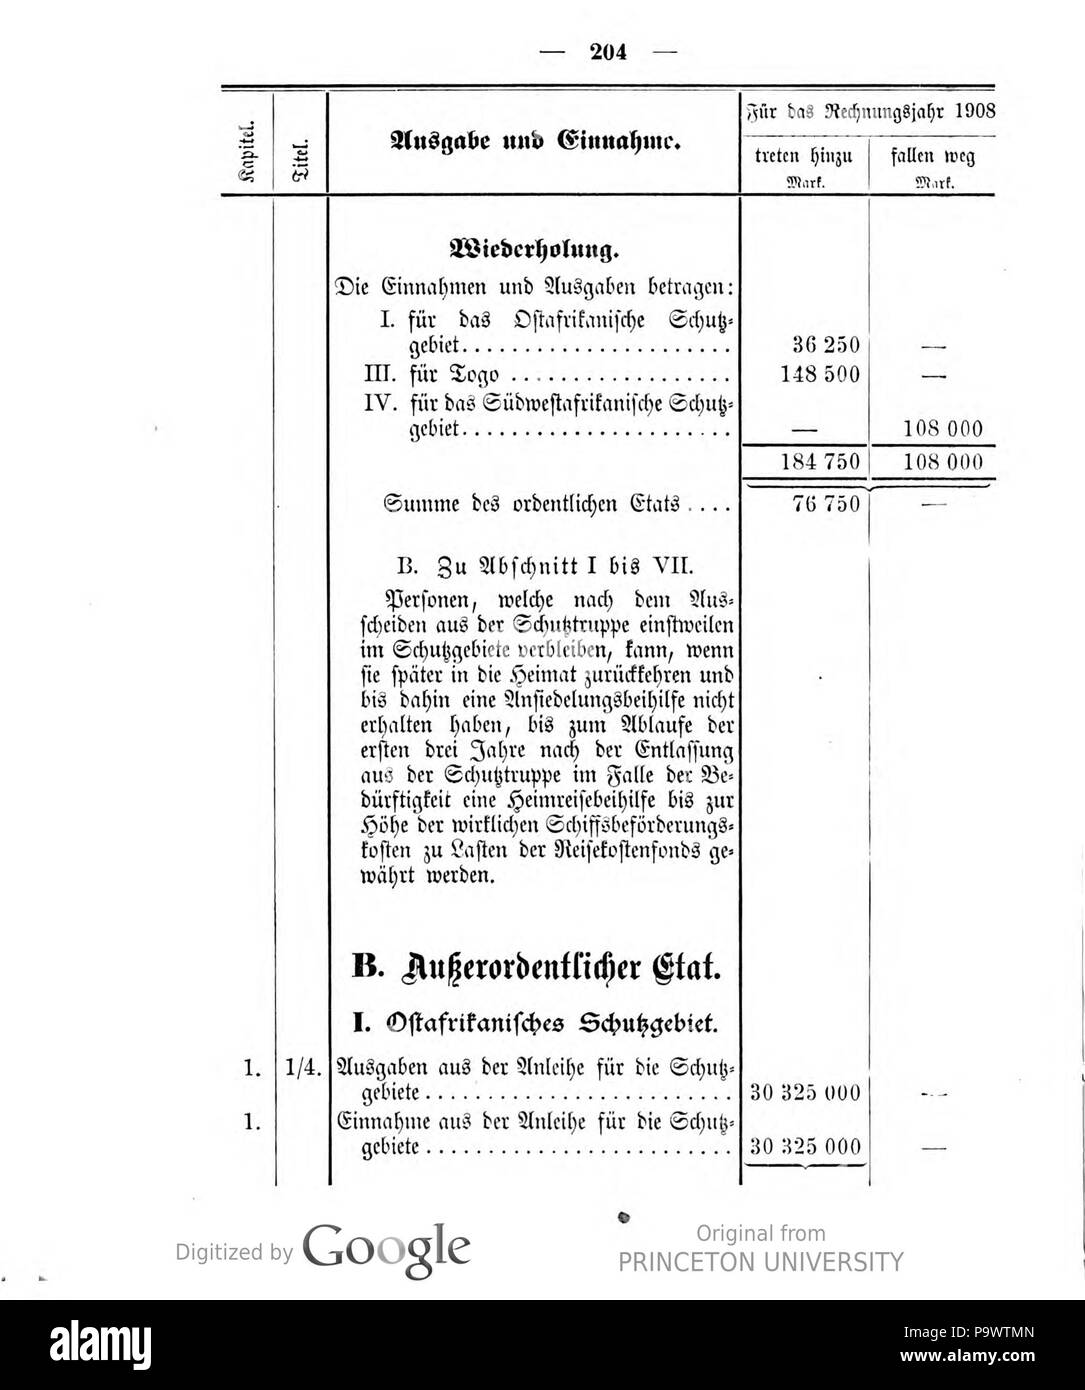 427 Deutsches Reichsgesetzblatt 1908 025 204 Stock Photo